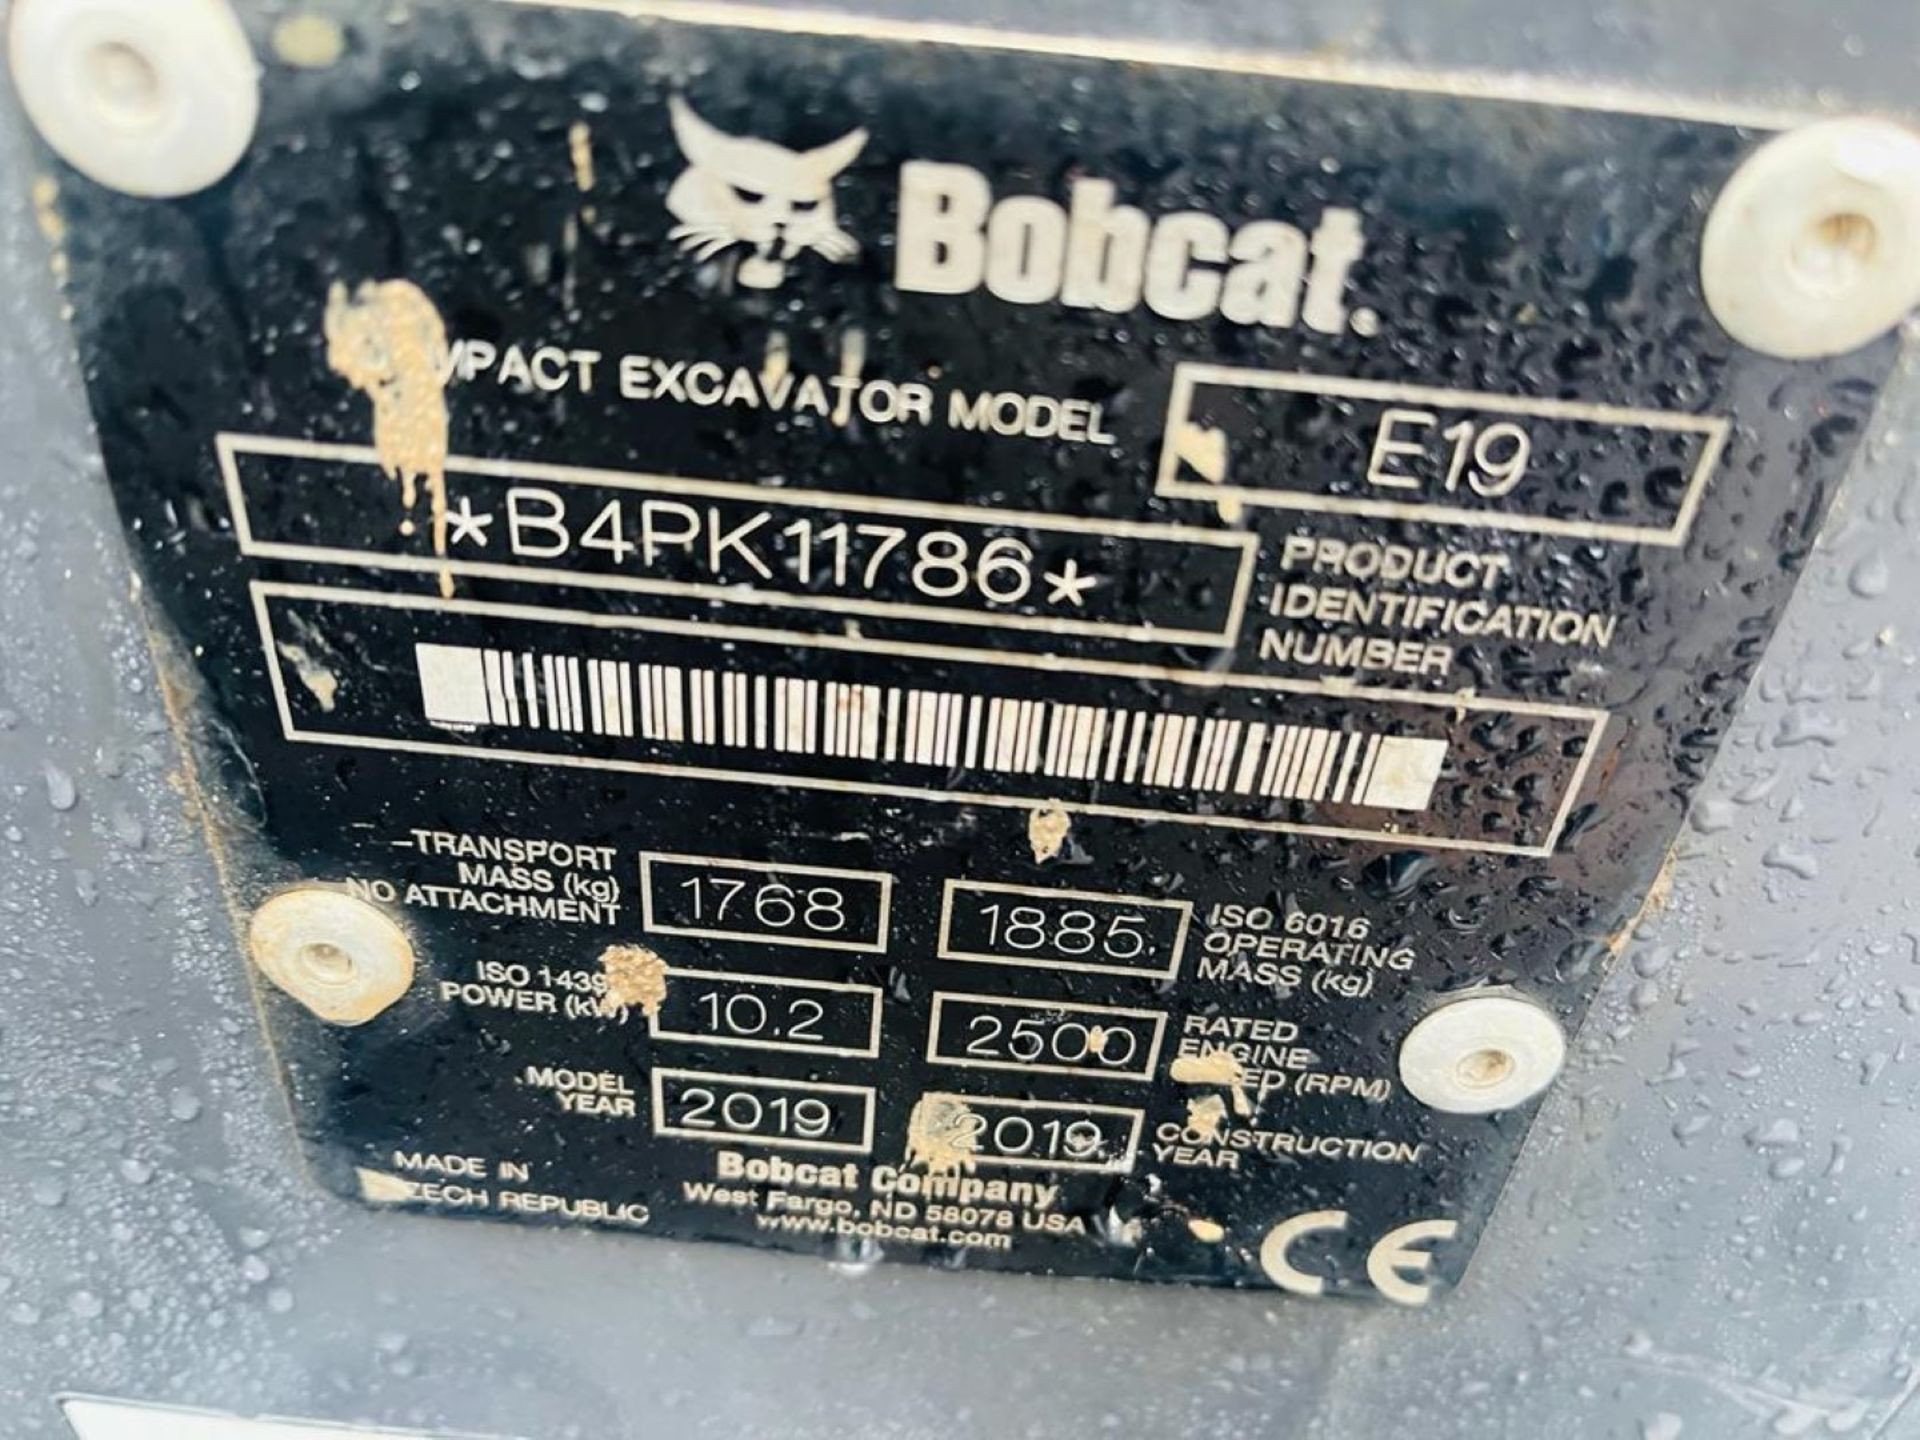 2019 - BOBCAT E19 EXCAVATOR - Bild 13 aus 15